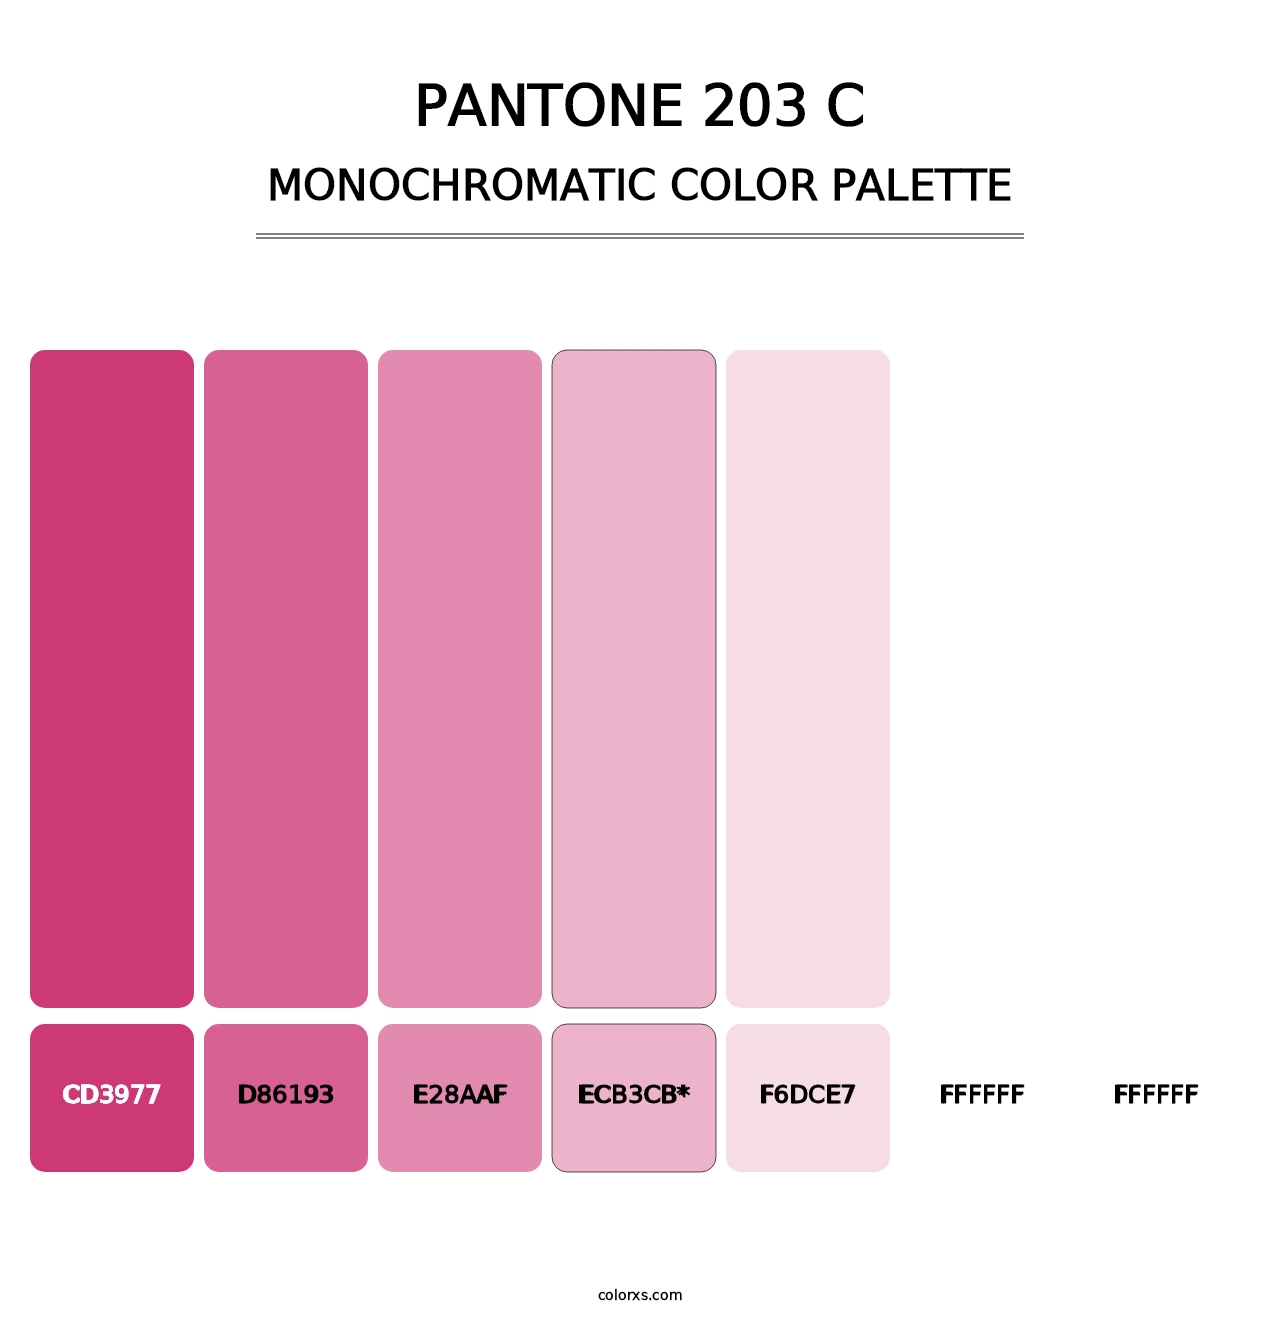 PANTONE 203 C - Monochromatic Color Palette